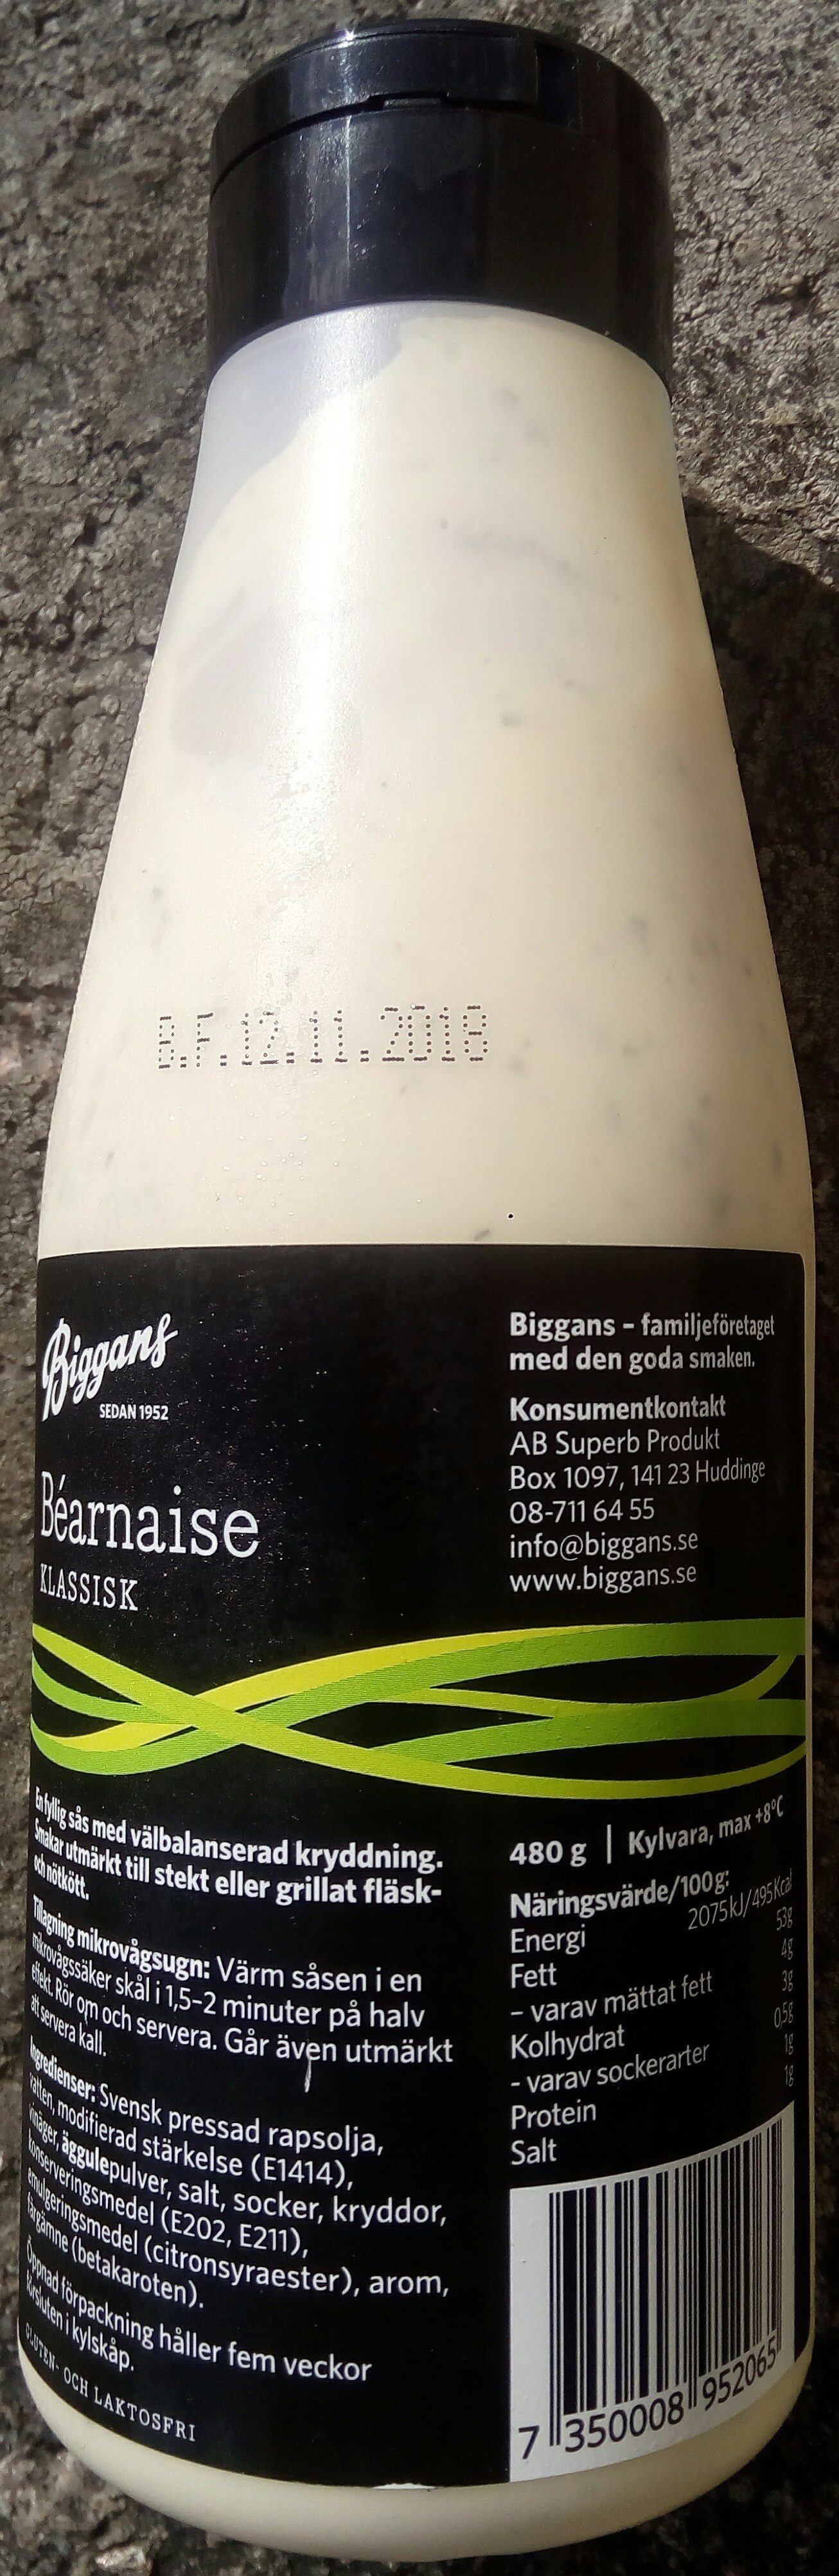 Biggans Béarnaise Klassisk - Produkt - sv